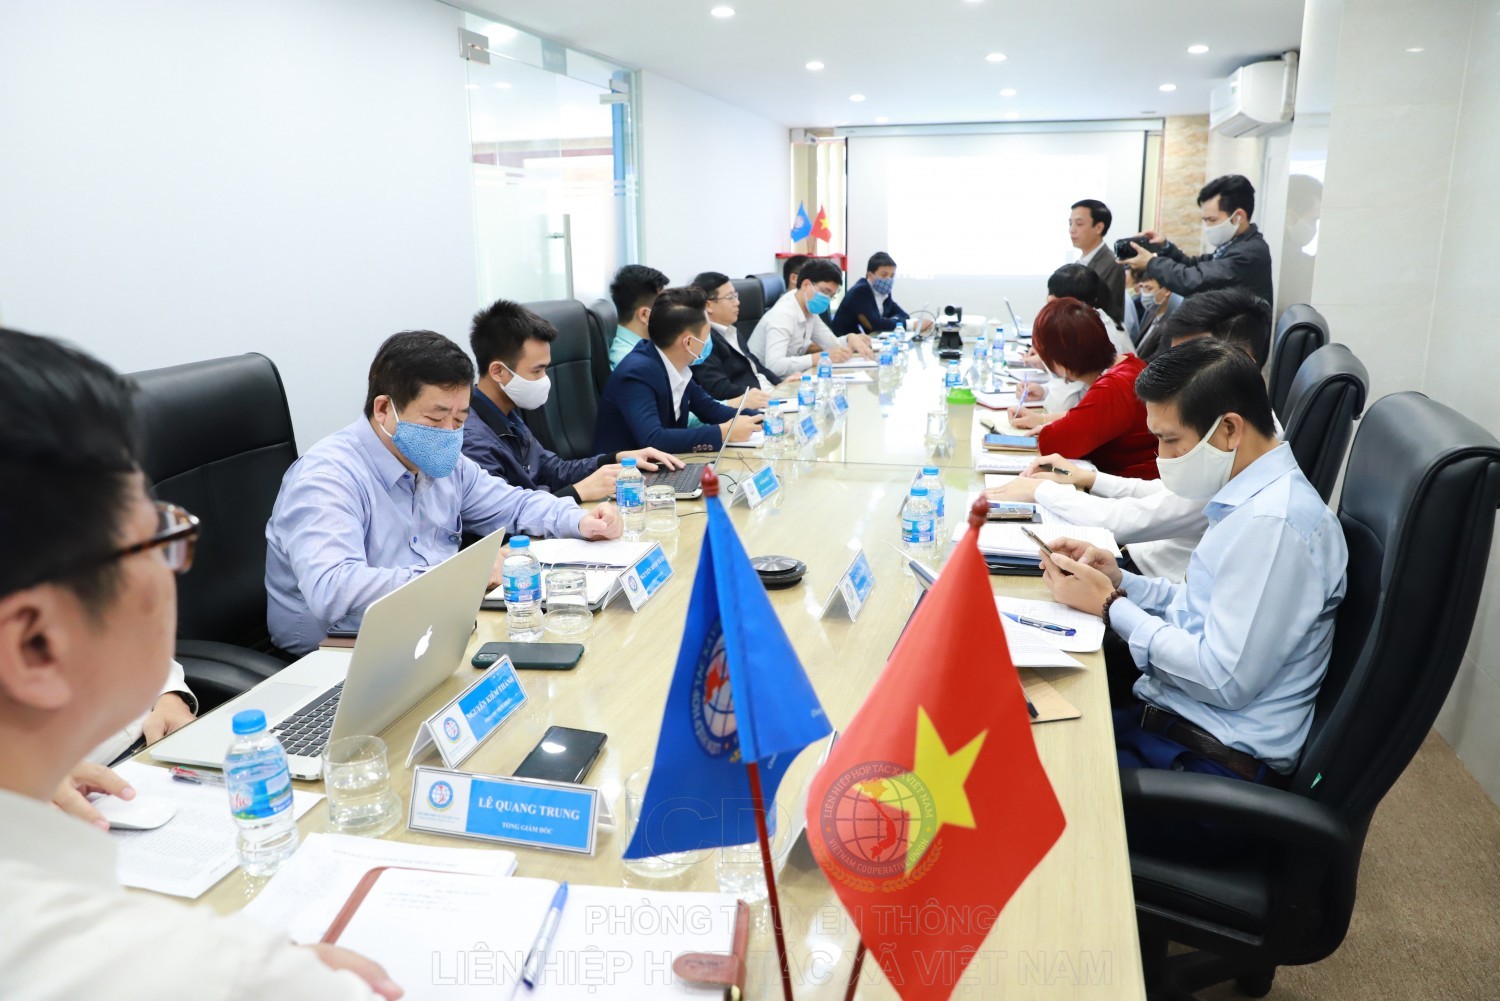 Quang cảnh cuộc họp trực tuyến đầu tiên của Liên Hiệp Hợp tác xã Việt Nam dưới sự chủ trì của Tổng Giám đốc Lê Quang Trung